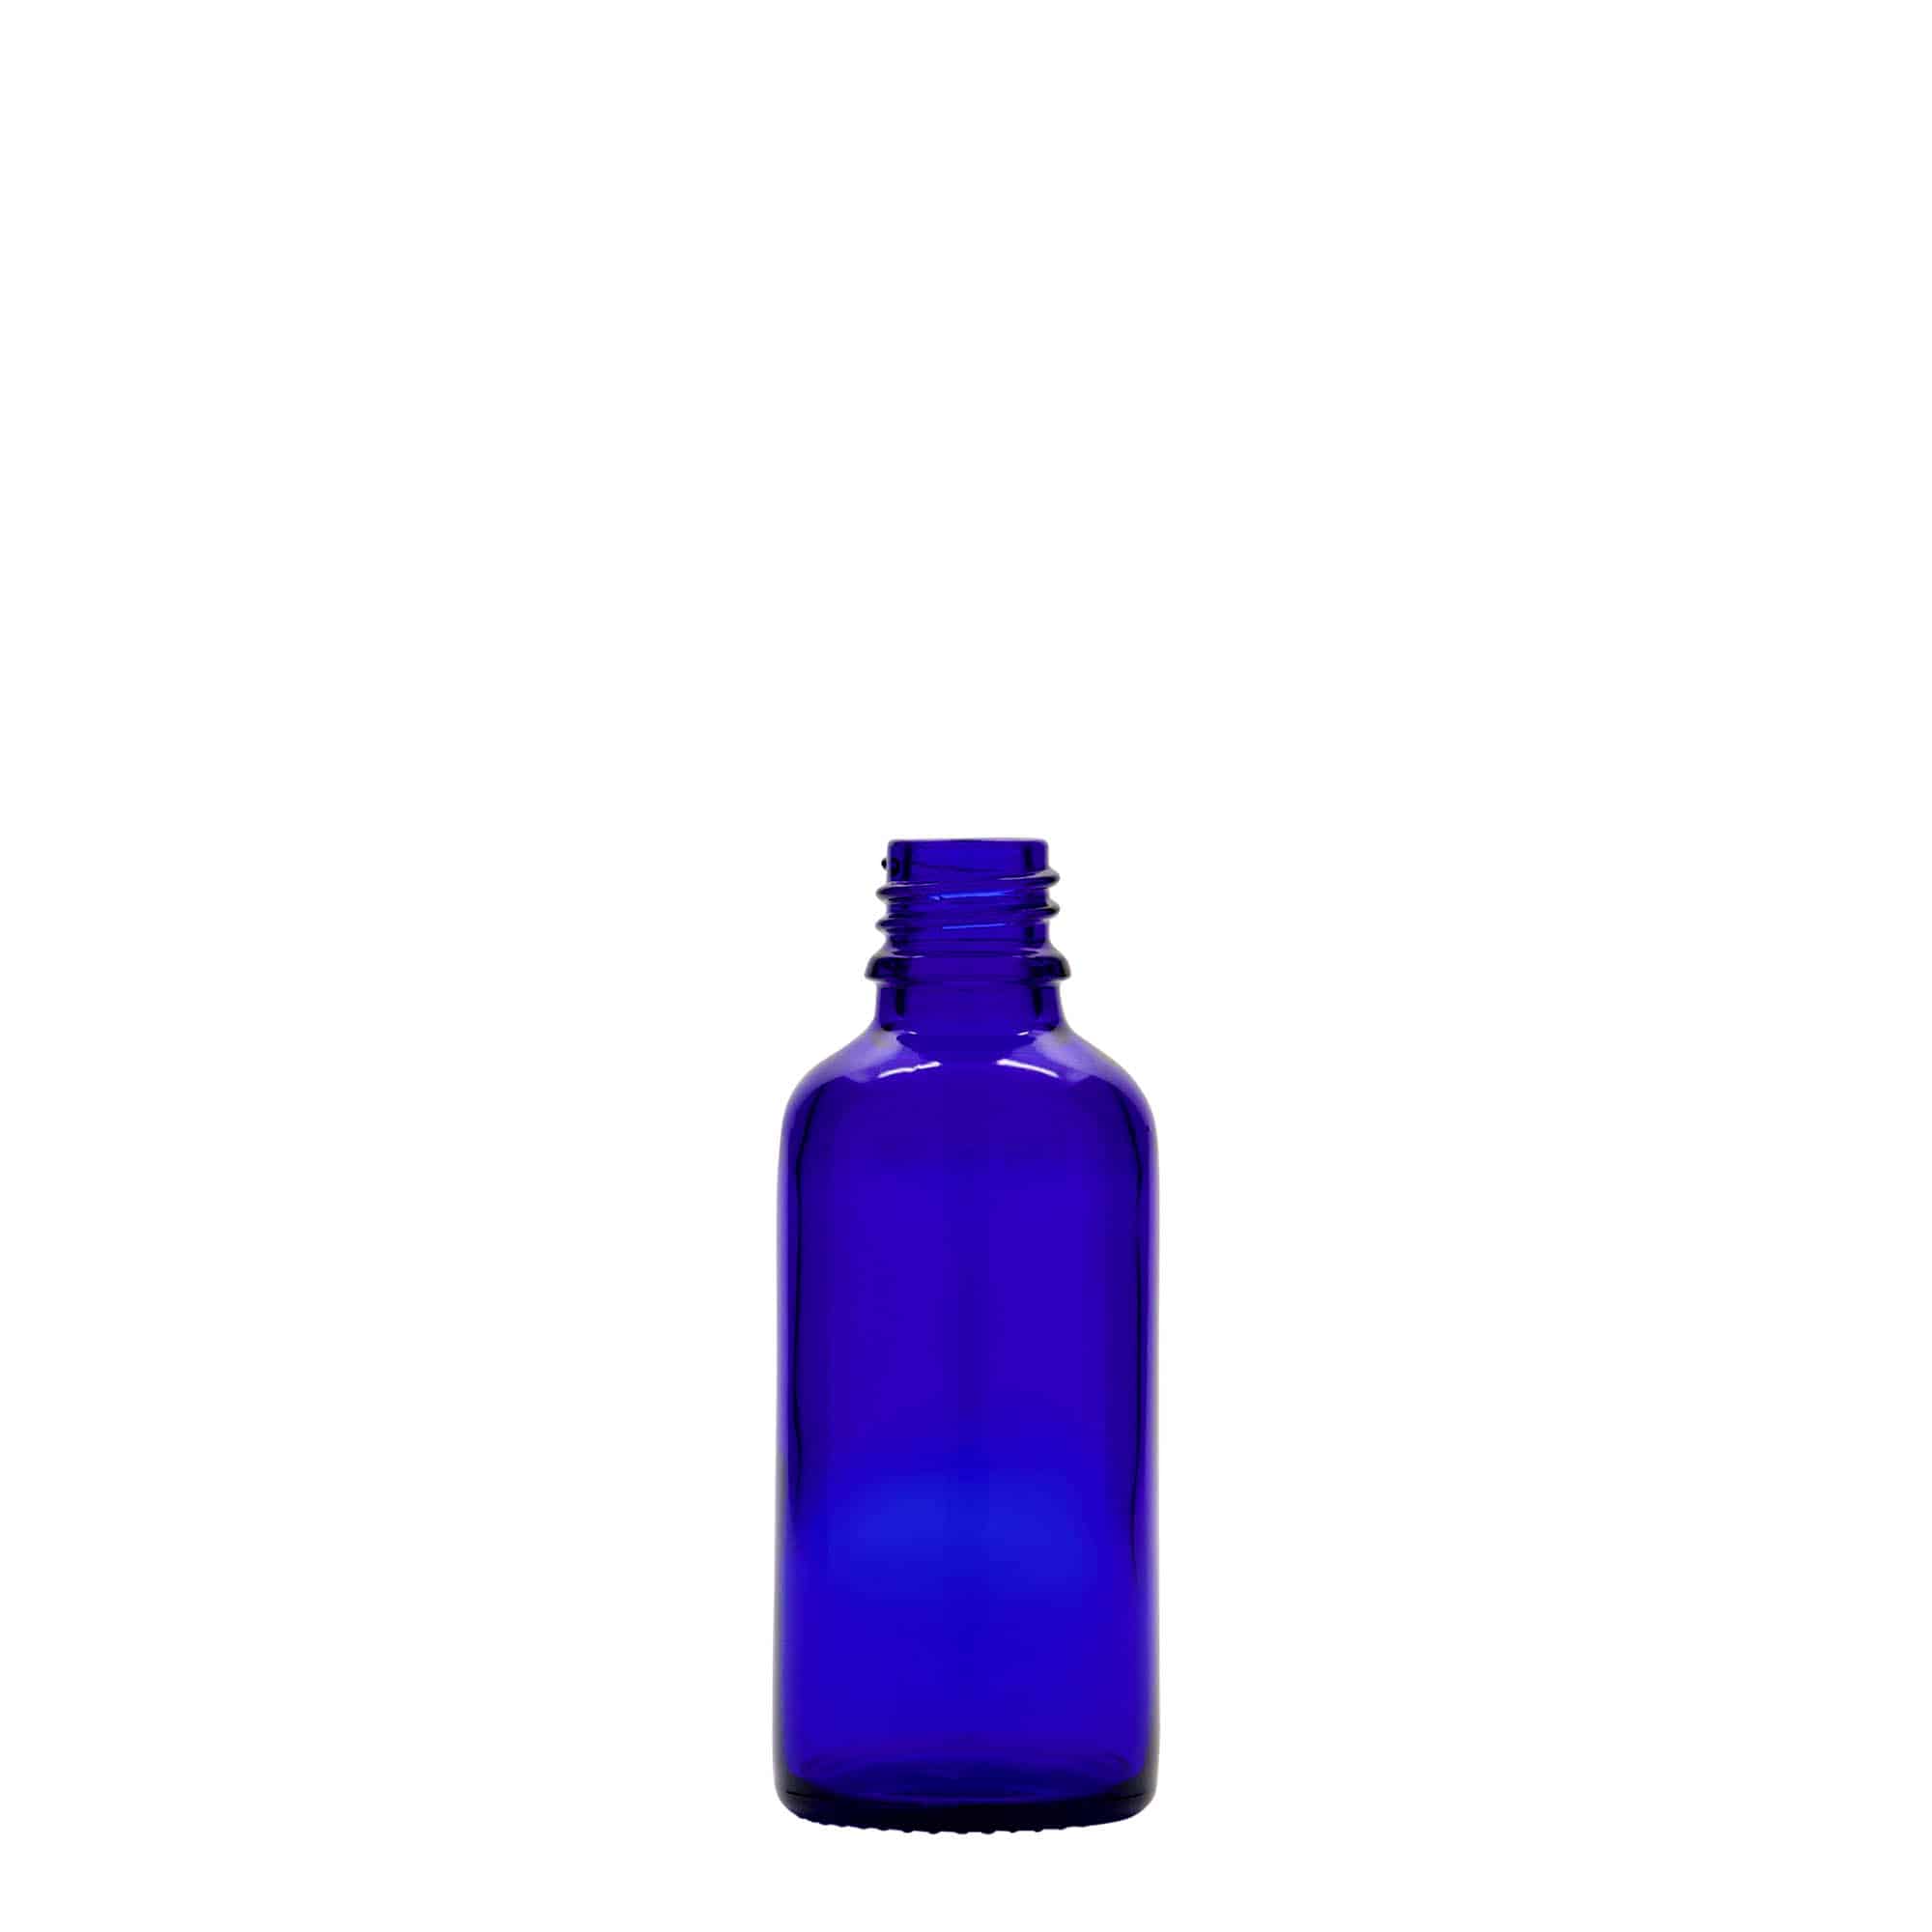 Lékovka 50 ml, sklo, královská modř, ústí: DIN 18